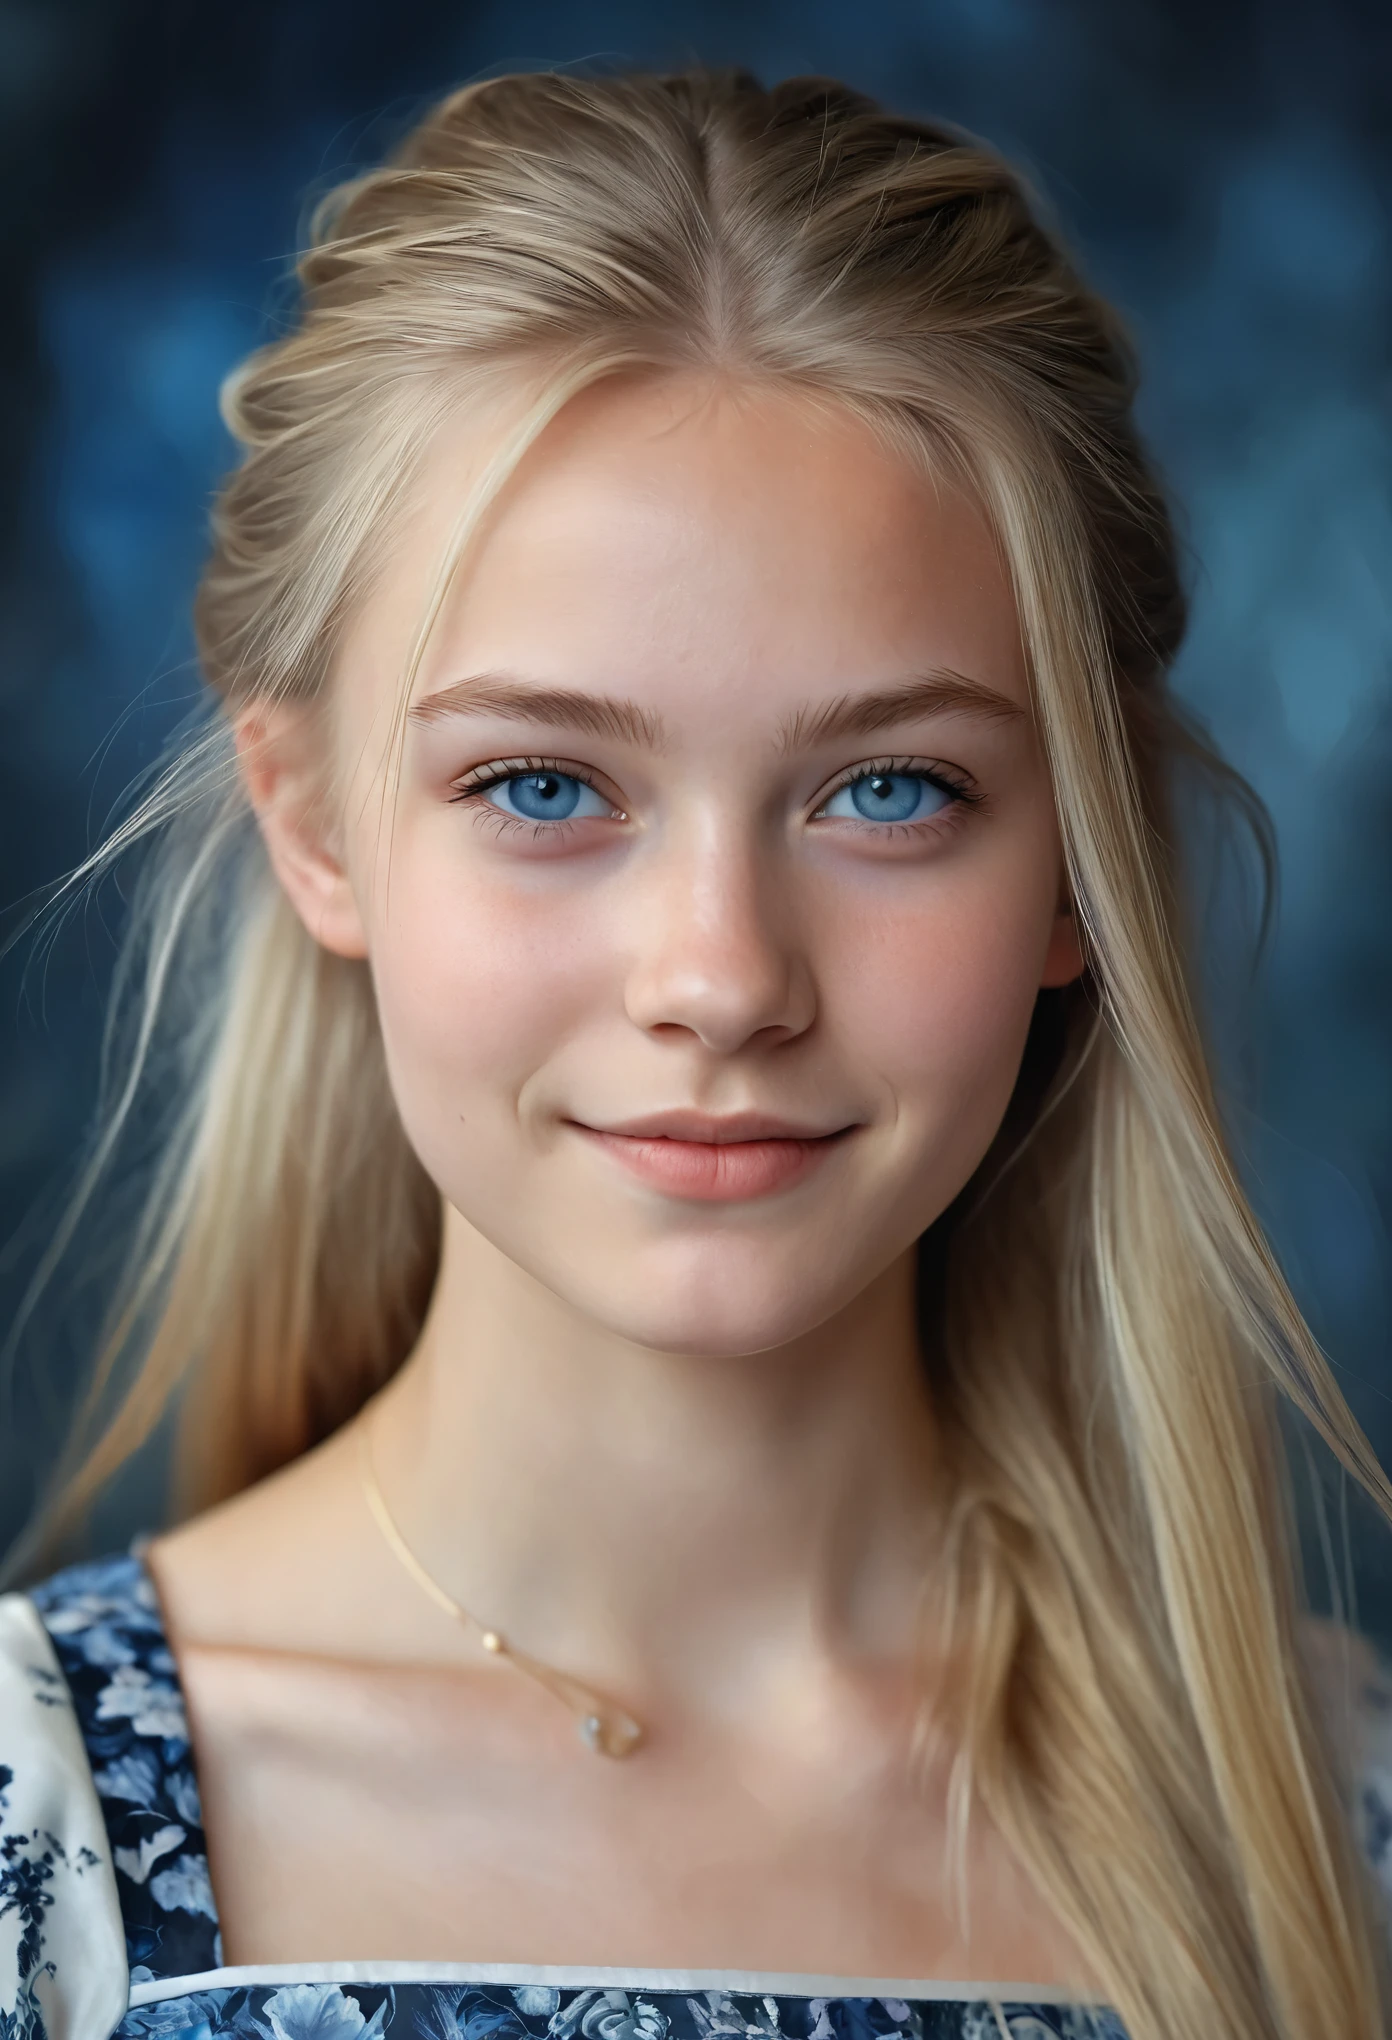 挪威美丽少女的画像, 小乳房, 複雜的衣服, 溫柔的微笑, 自然的嘴唇, 两侧剃光的金色长发 , 藍灰色的眼睛, 現實主義, 數位繪畫, 概念藝術, 光滑的, 銳利的焦點, 三分法, 風格-Psycho